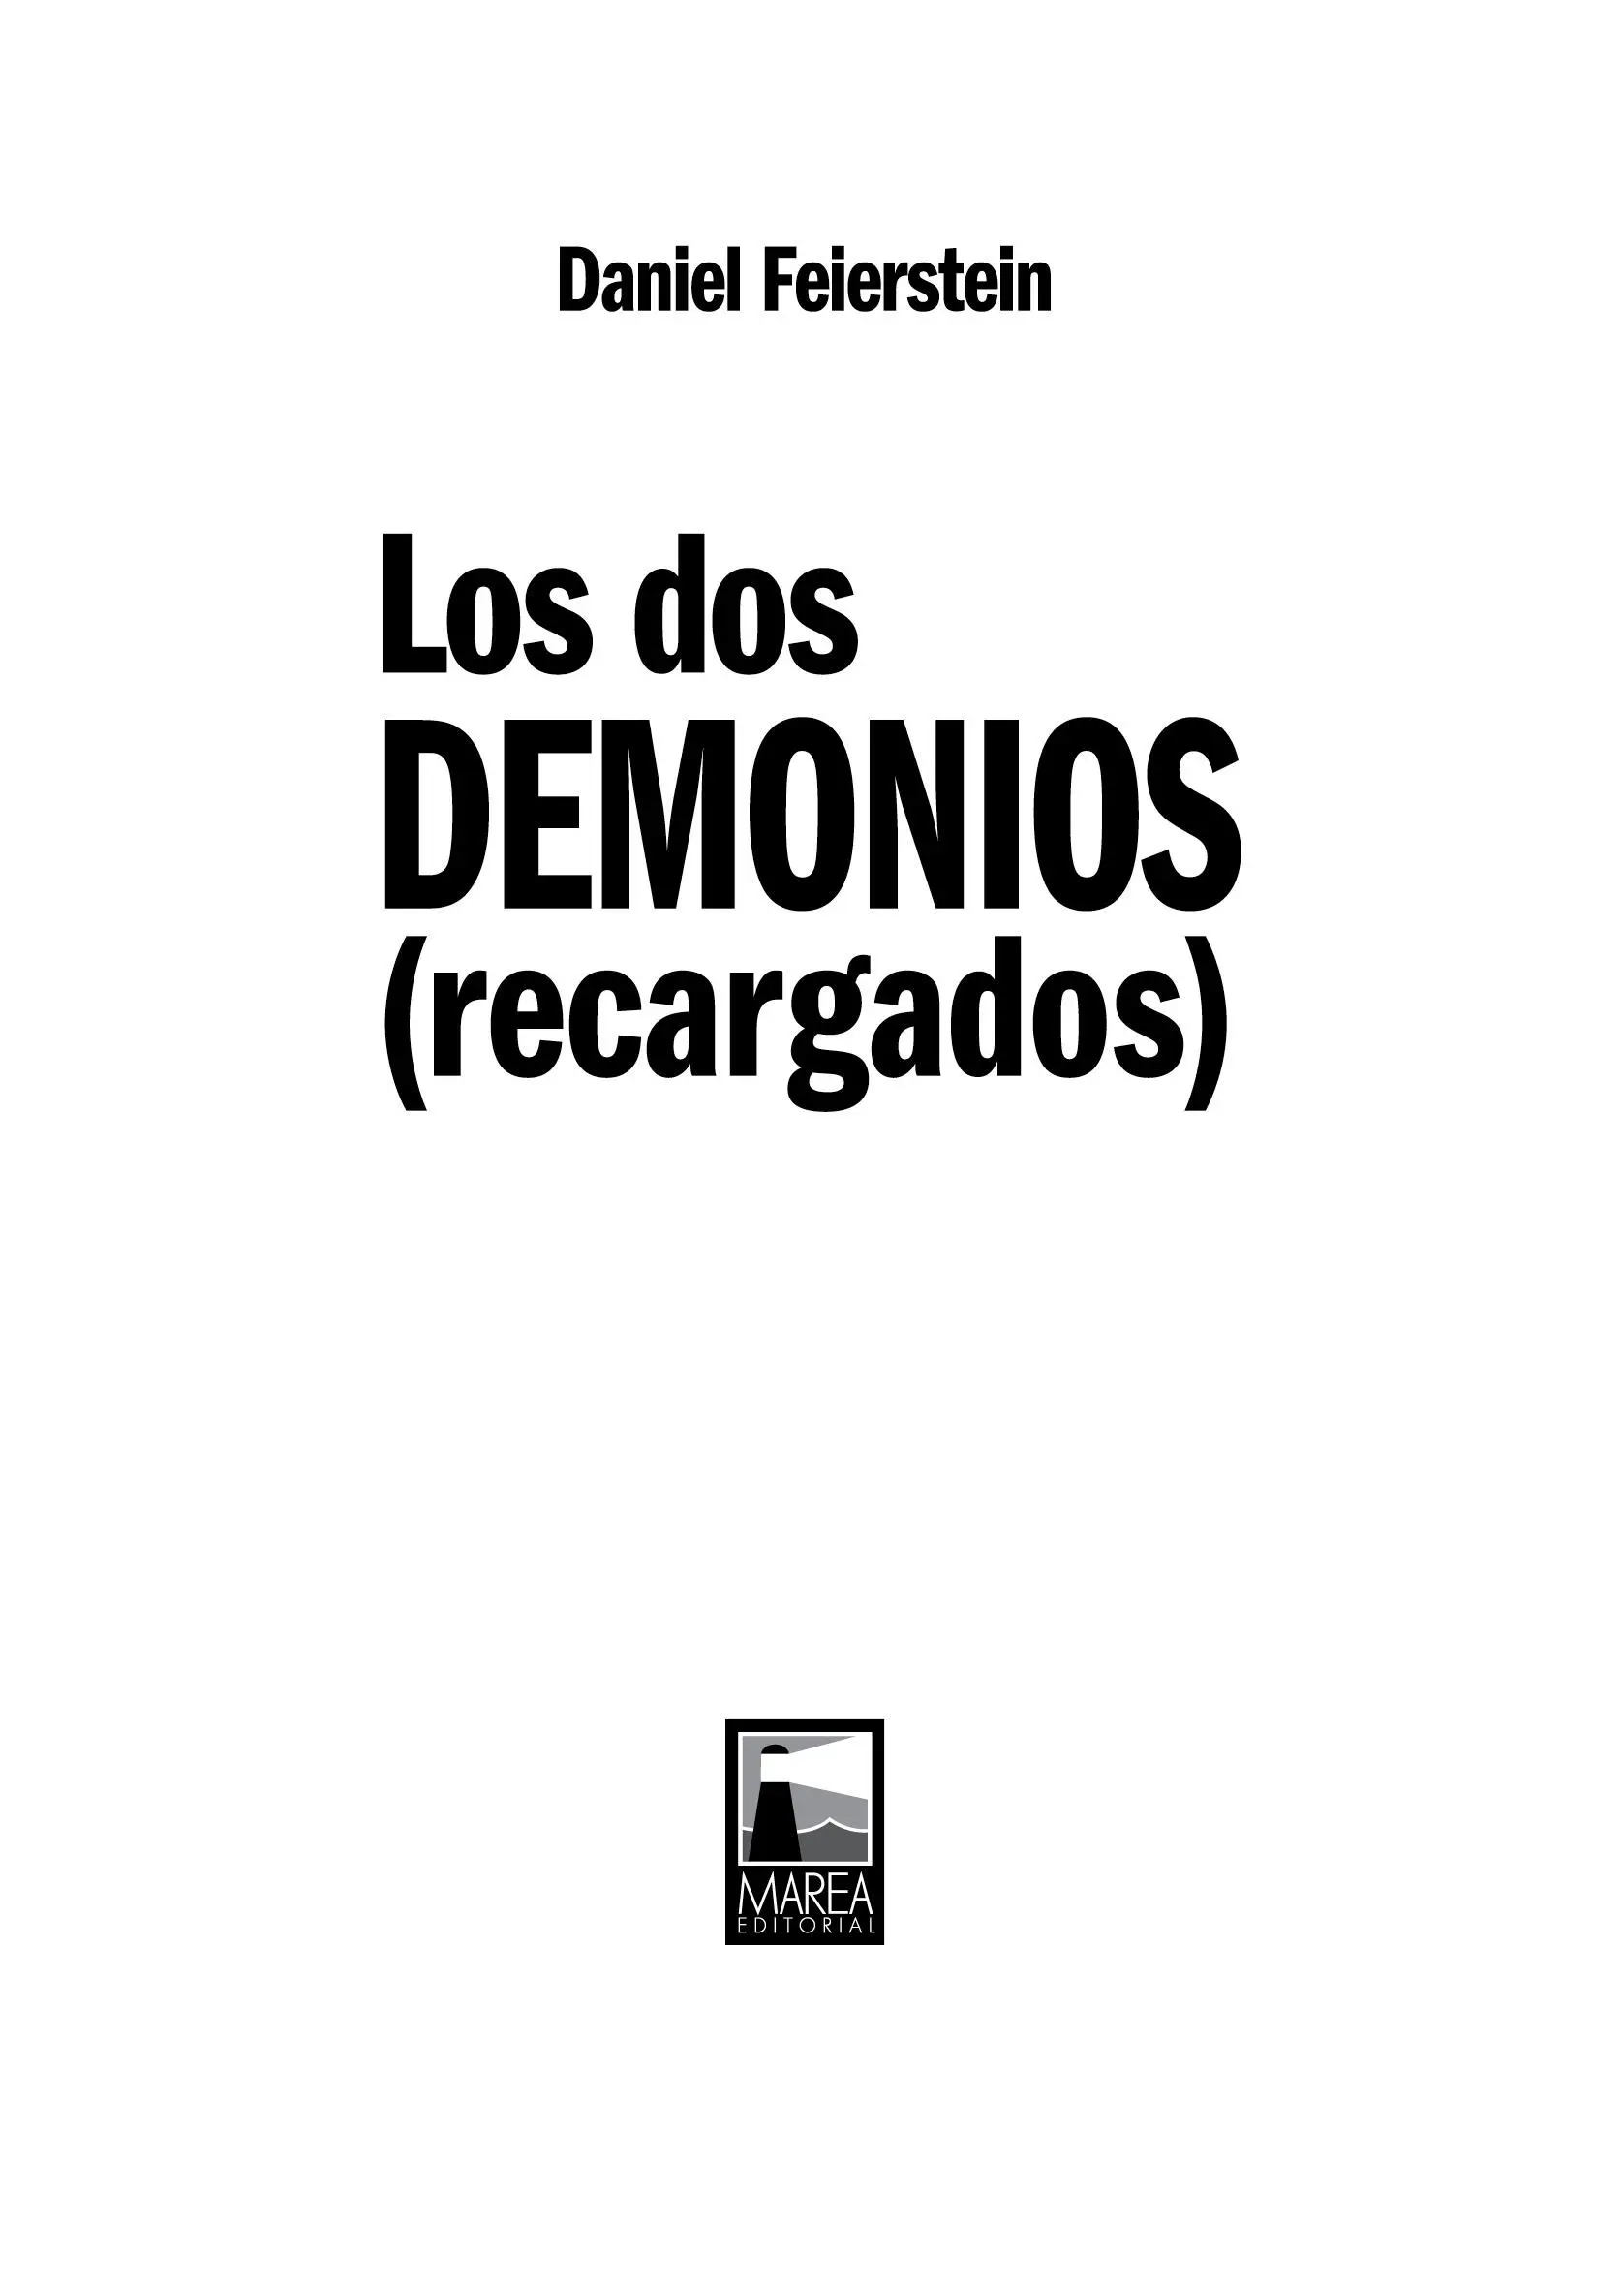 Feierstein Daniel Los dos demonios recargados 1a ed Ciudad Autónoma de - фото 2